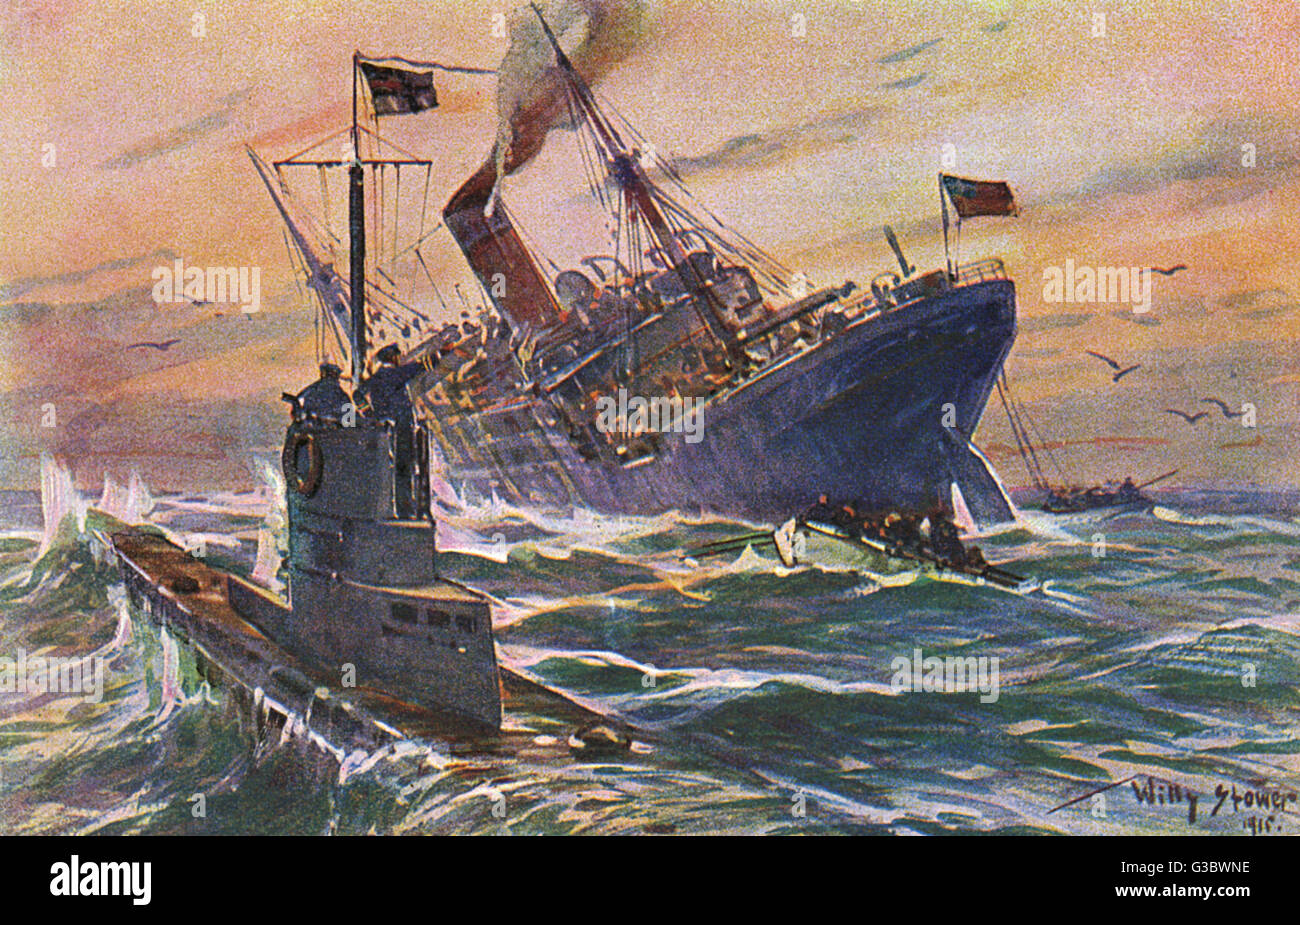 La PREMIÈRE GUERRE MONDIALE U-boat allemand attaque d'un cargo commercial anglais. Date : 1915 Banque D'Images